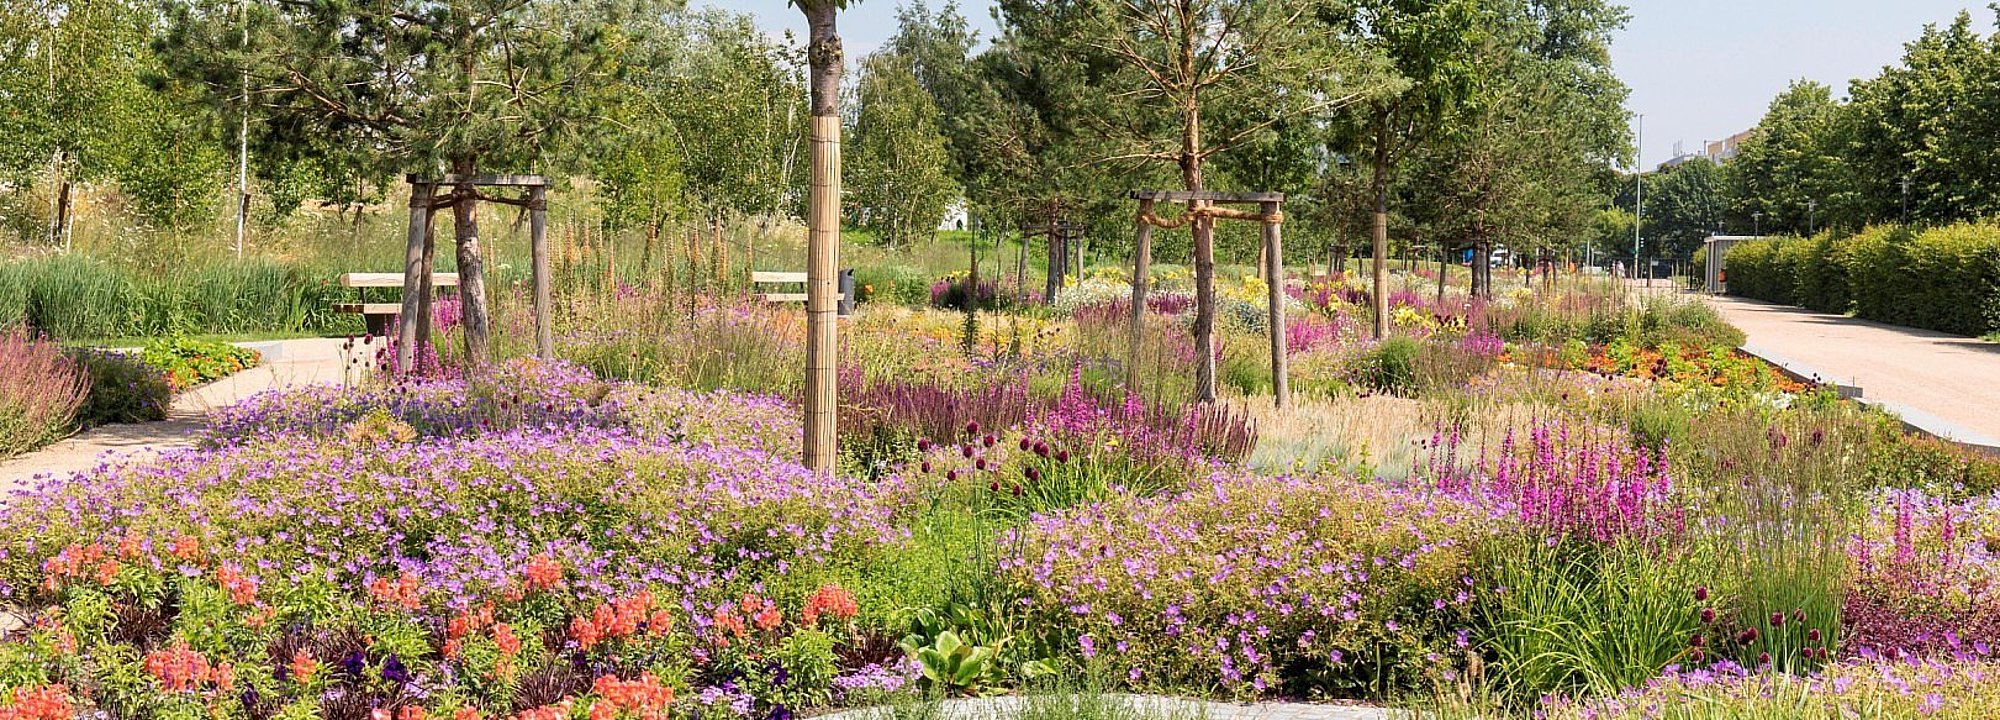 Blumenbeete in Rot- und Lila-Tönen des Märkischen Gartens im Kienberpark